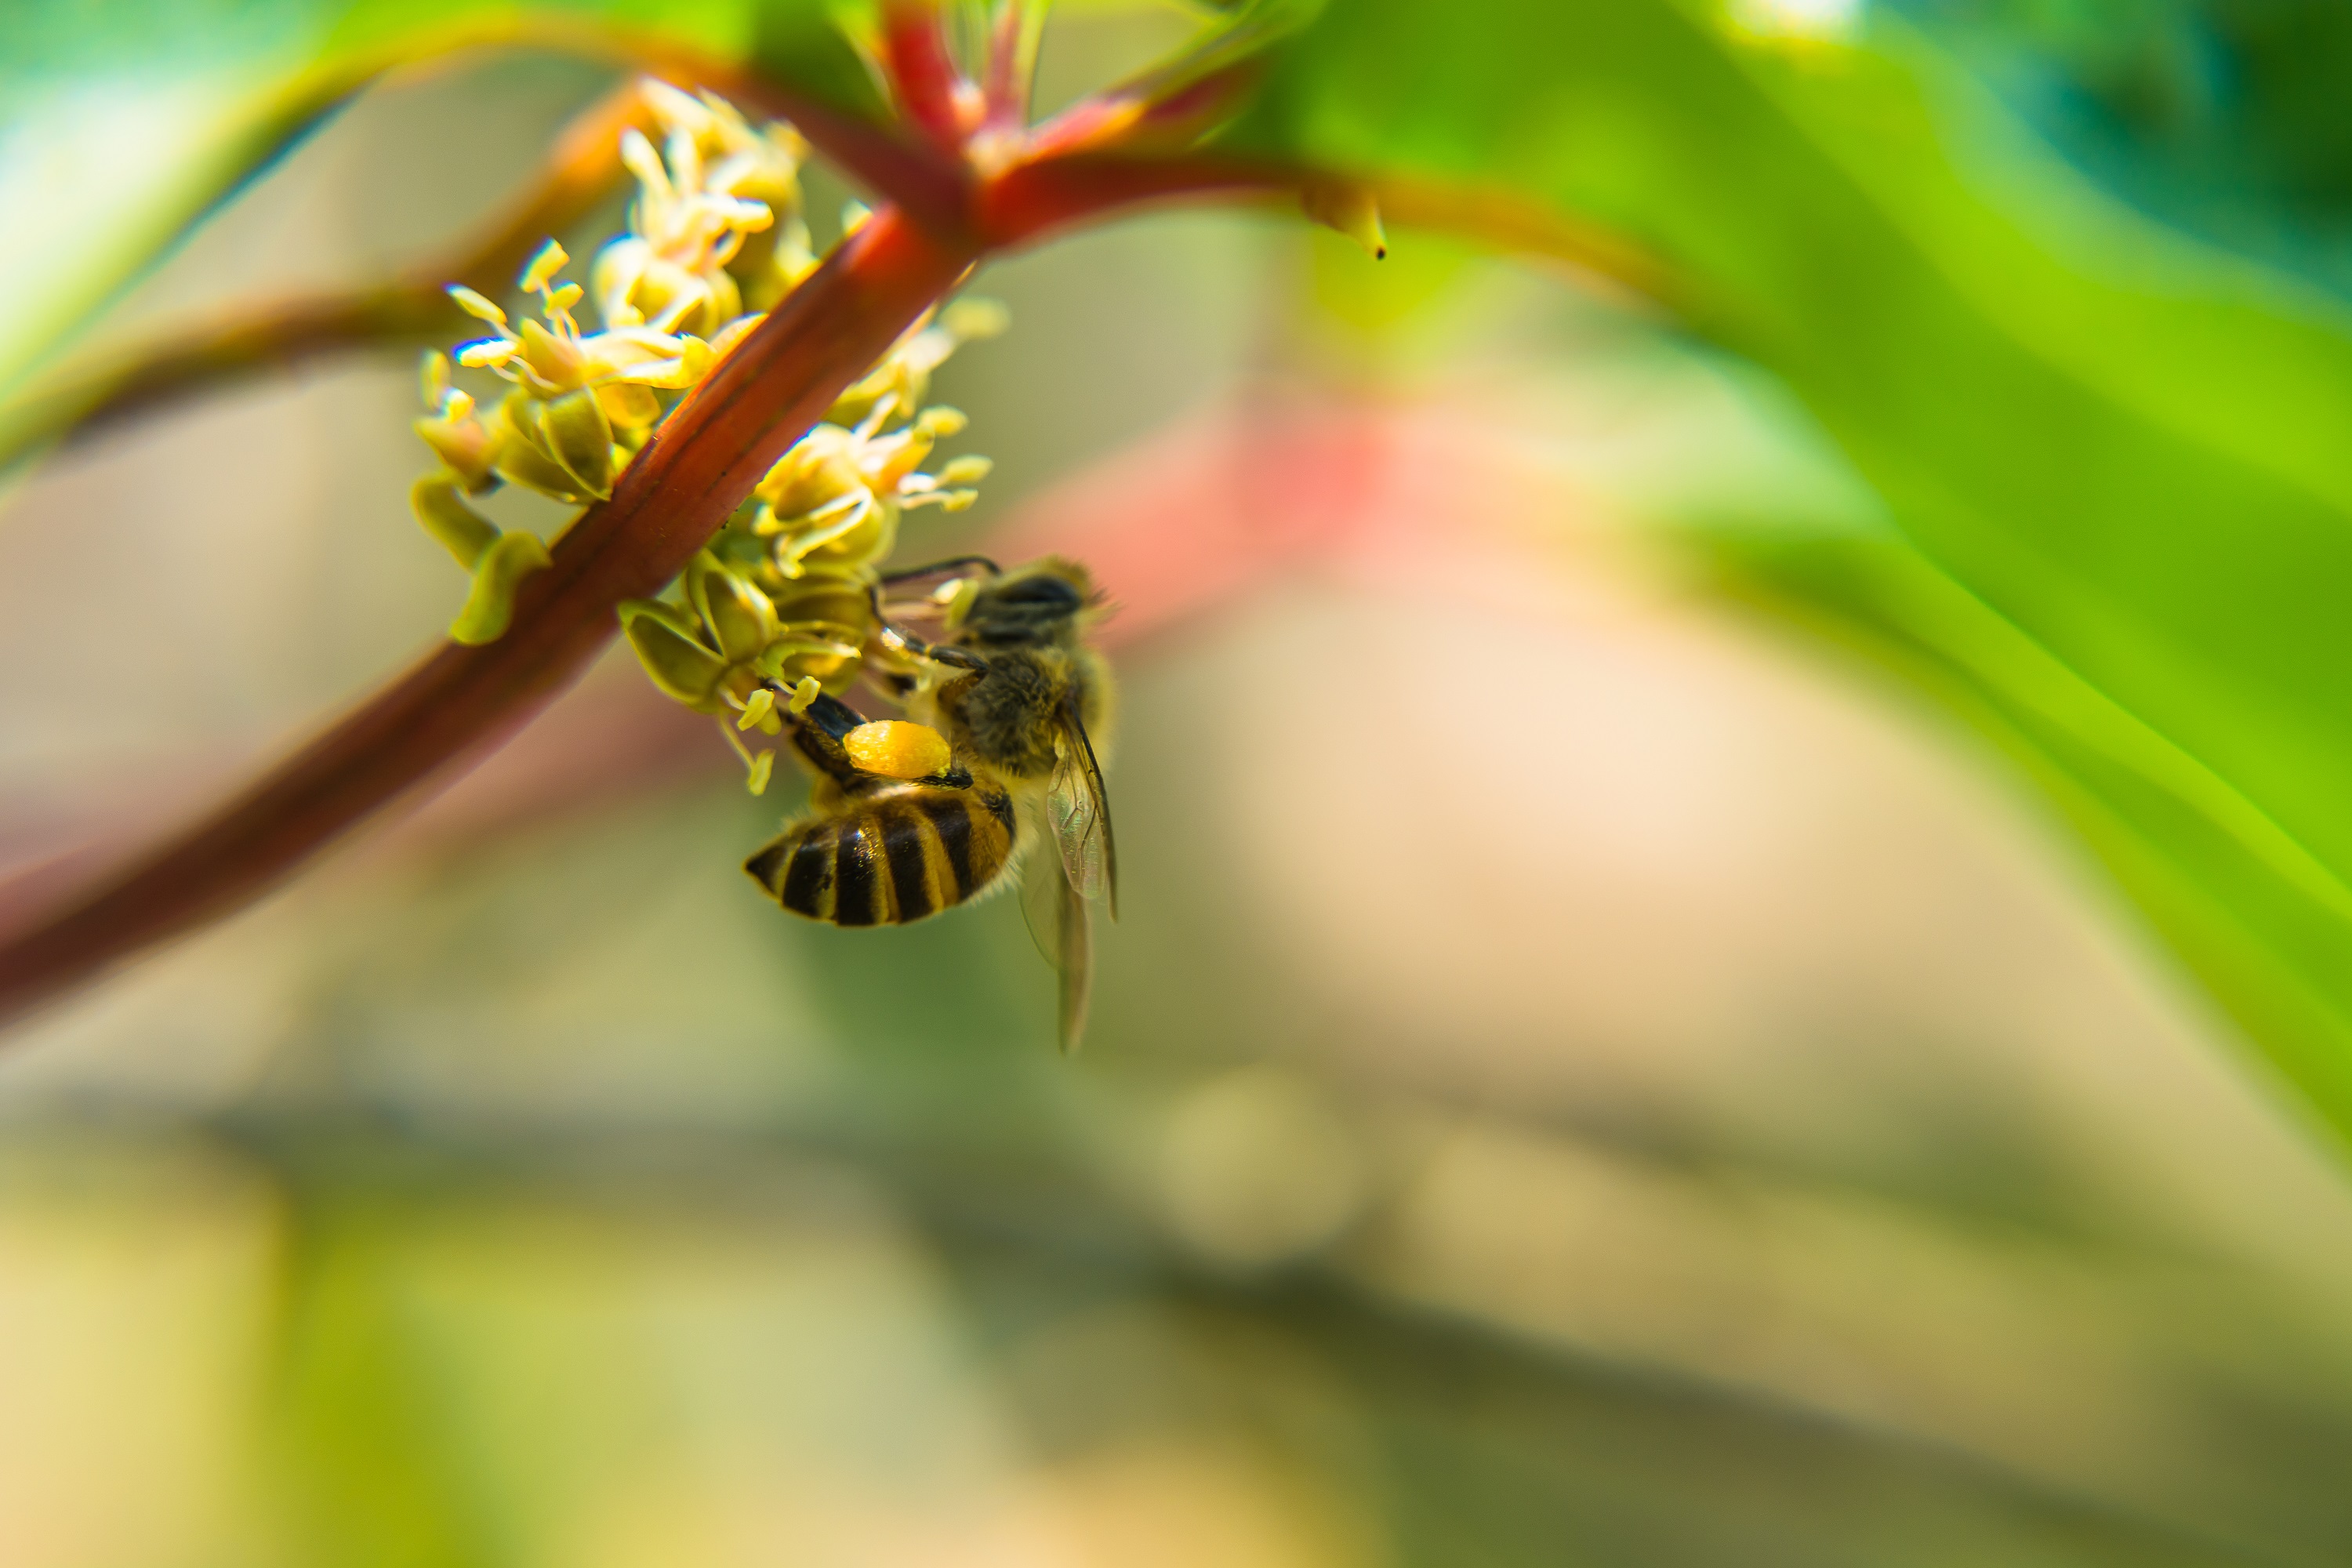 Pyłek pszczeli – superfoods !